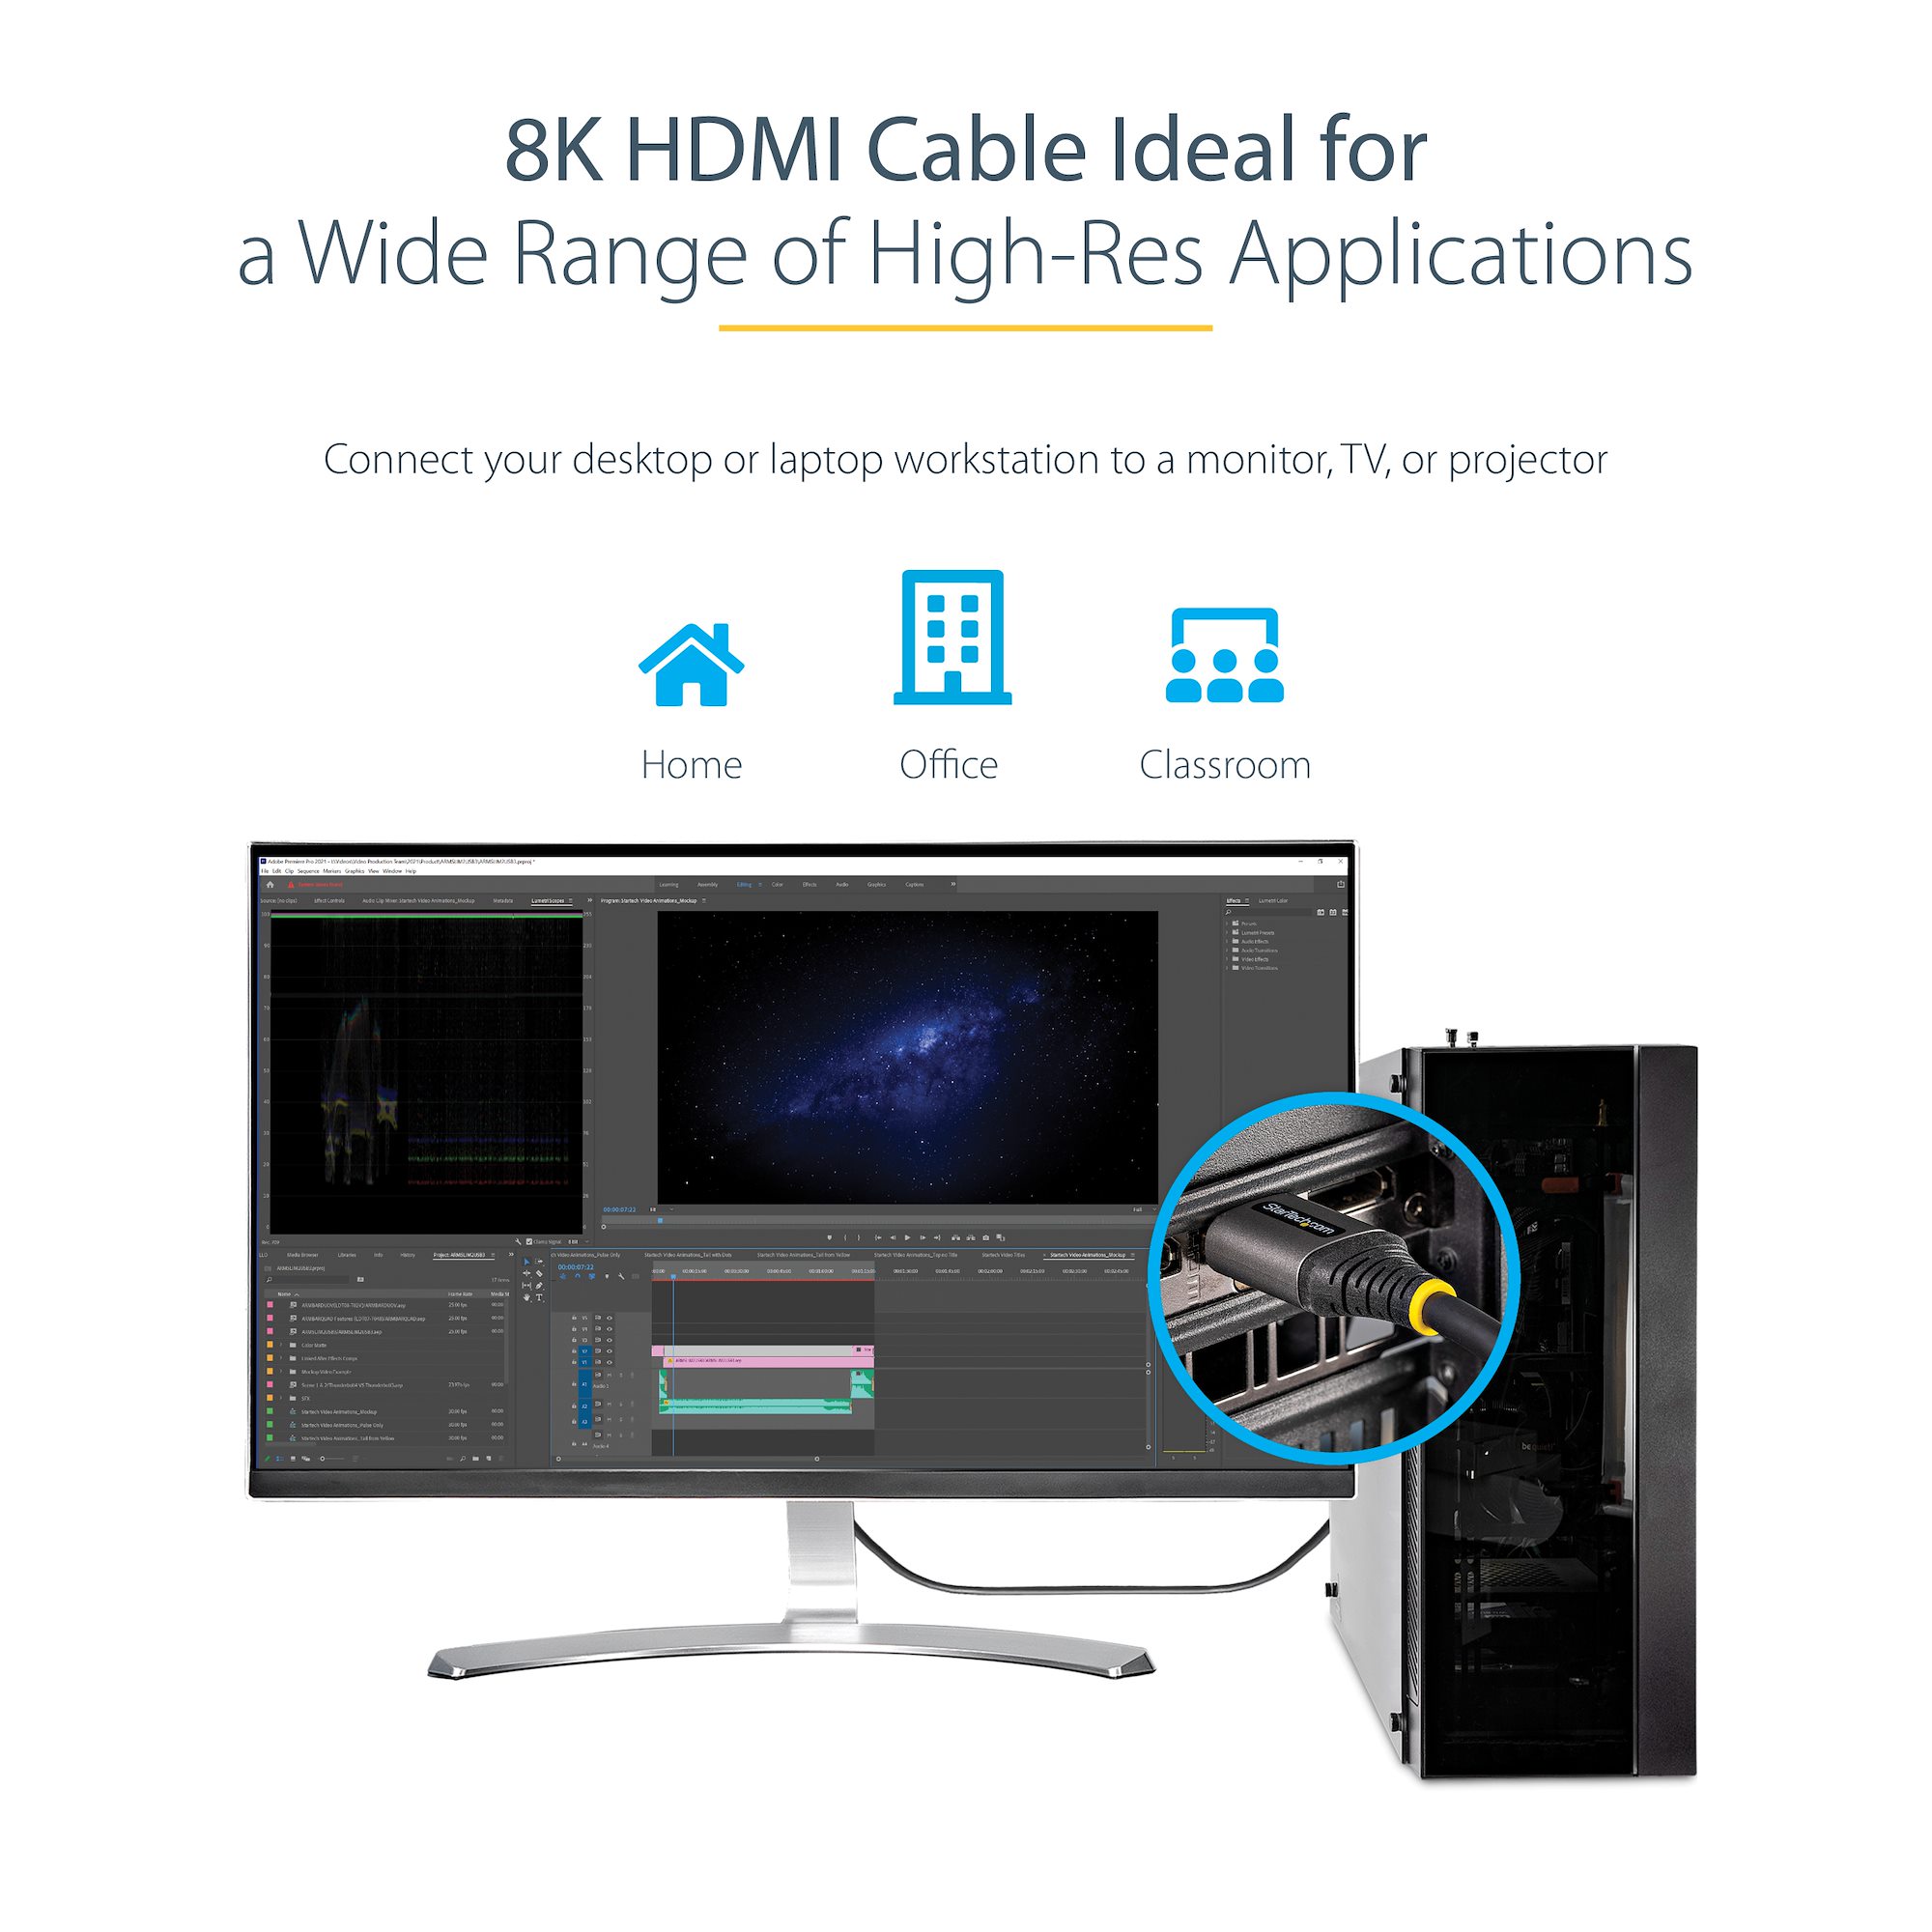 Cable StarTech.com HDMI 2.1 de 1m 48Gbps 8K 60Hz certificado de ultra alta  velocidad - HDMI - LDLC